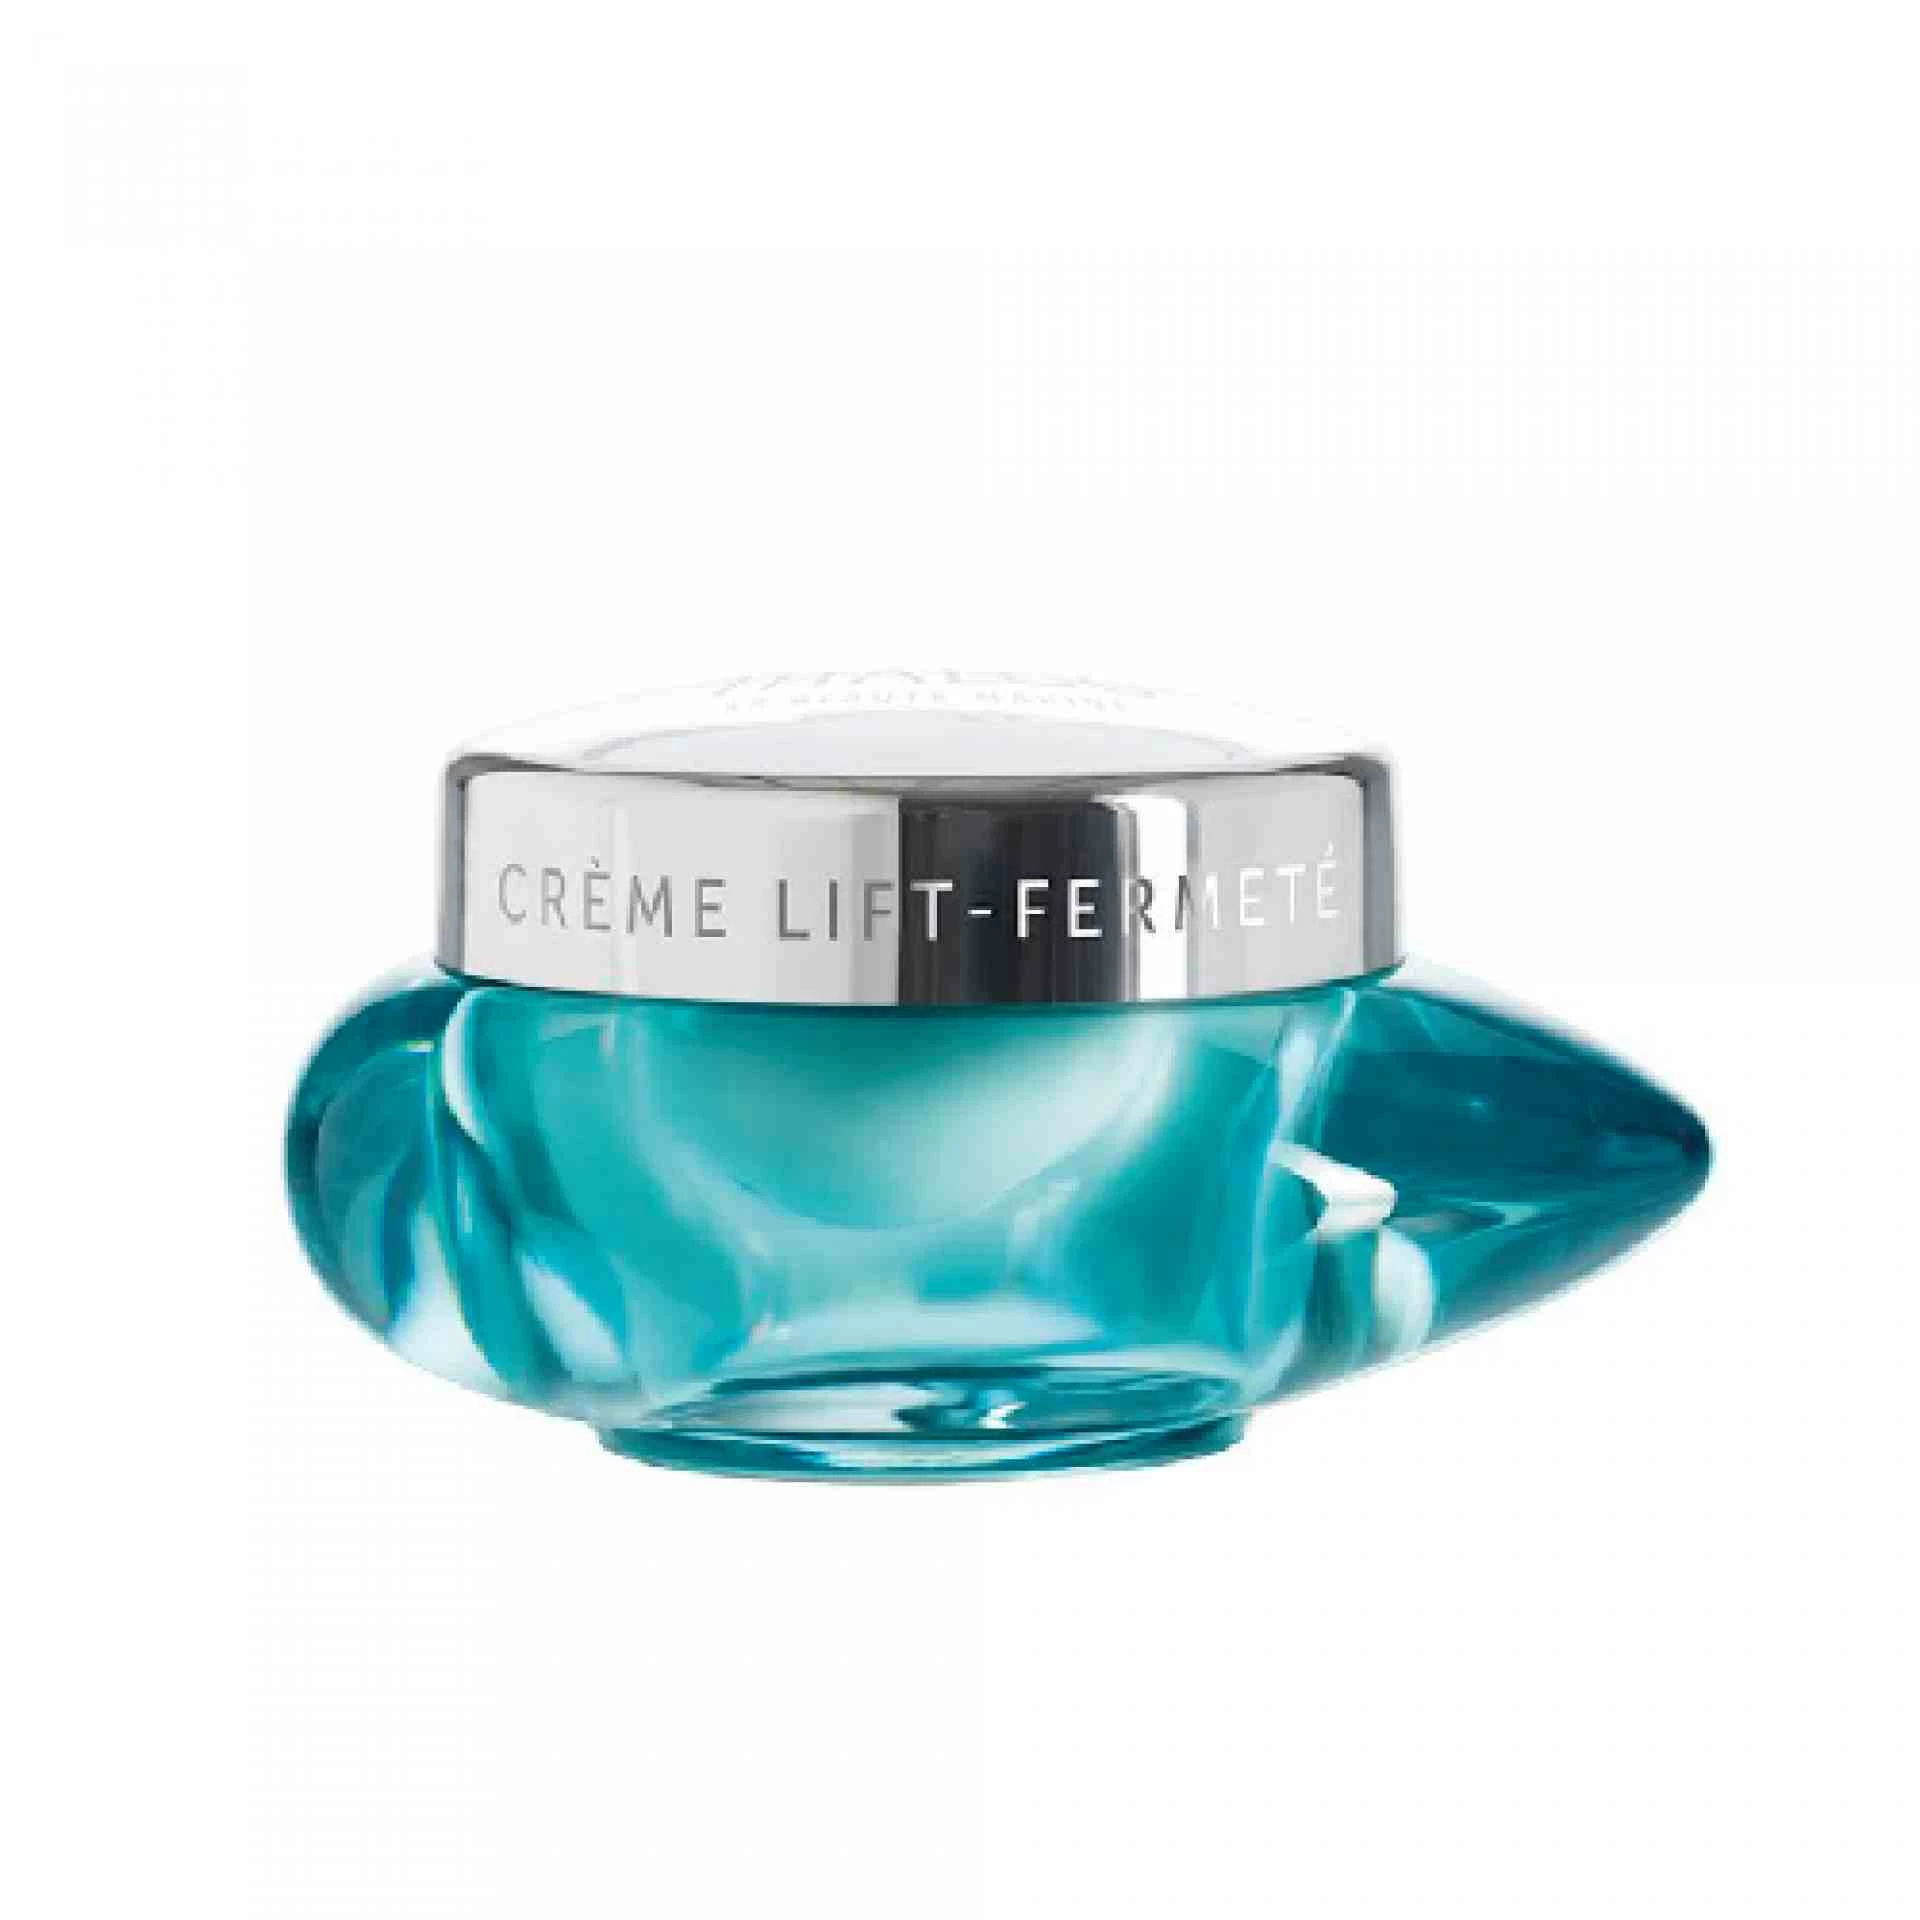 Crème Lift-Fermeté | Crema Facial 50 ml - Silicium Lift - Thalgo ®